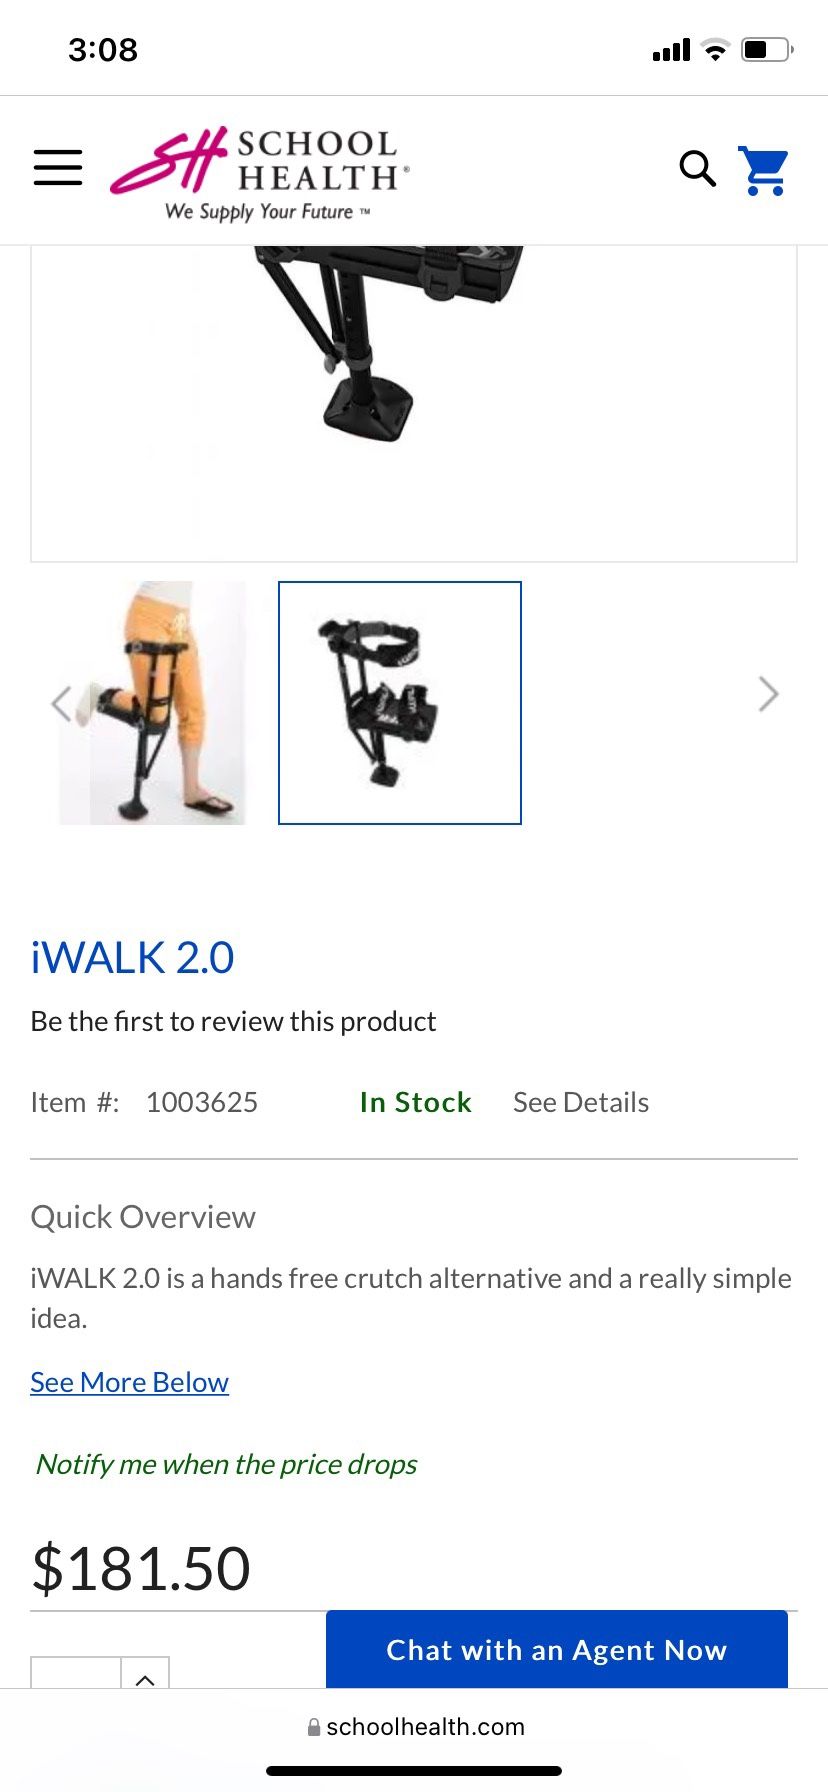 I walk 2.0 Hand Free Crutch 